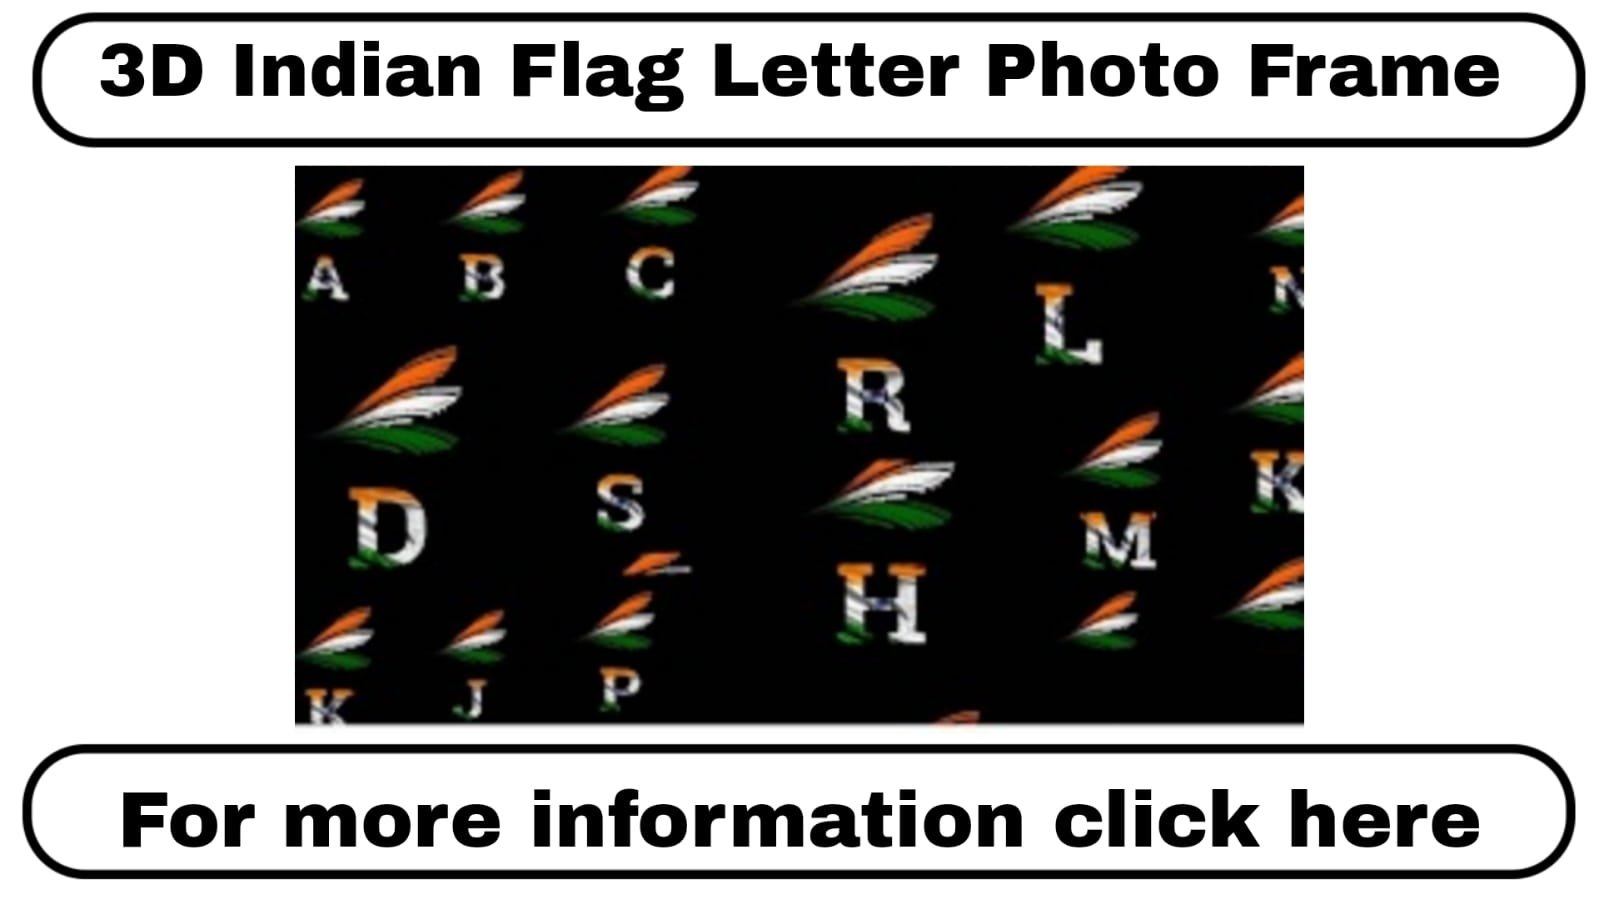 3D Indian Flag Letter Photo Frame